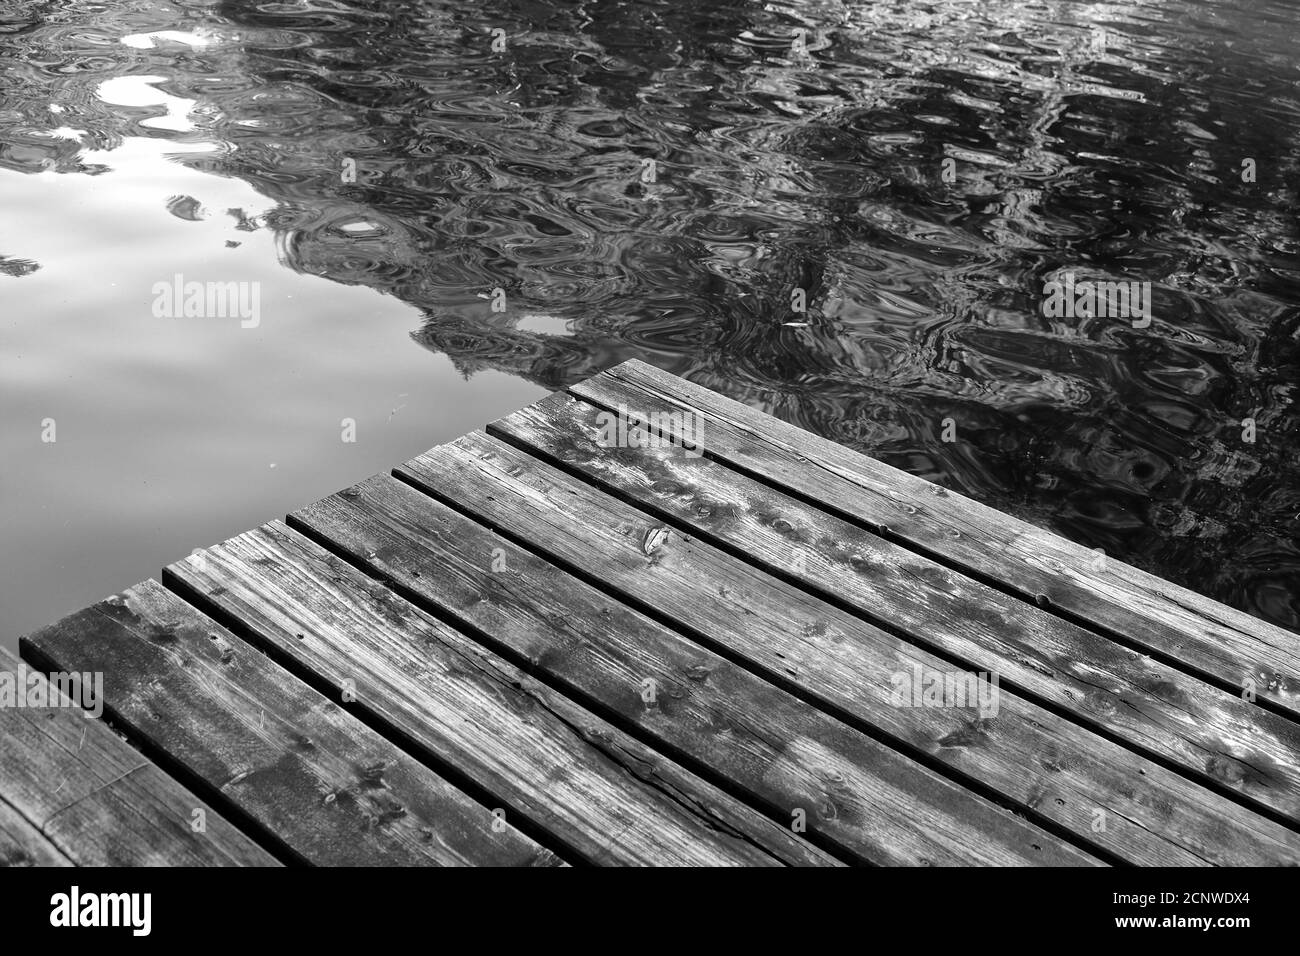 Prise de vue en niveaux de gris d'un quai en bois sur un lac Banque D'Images